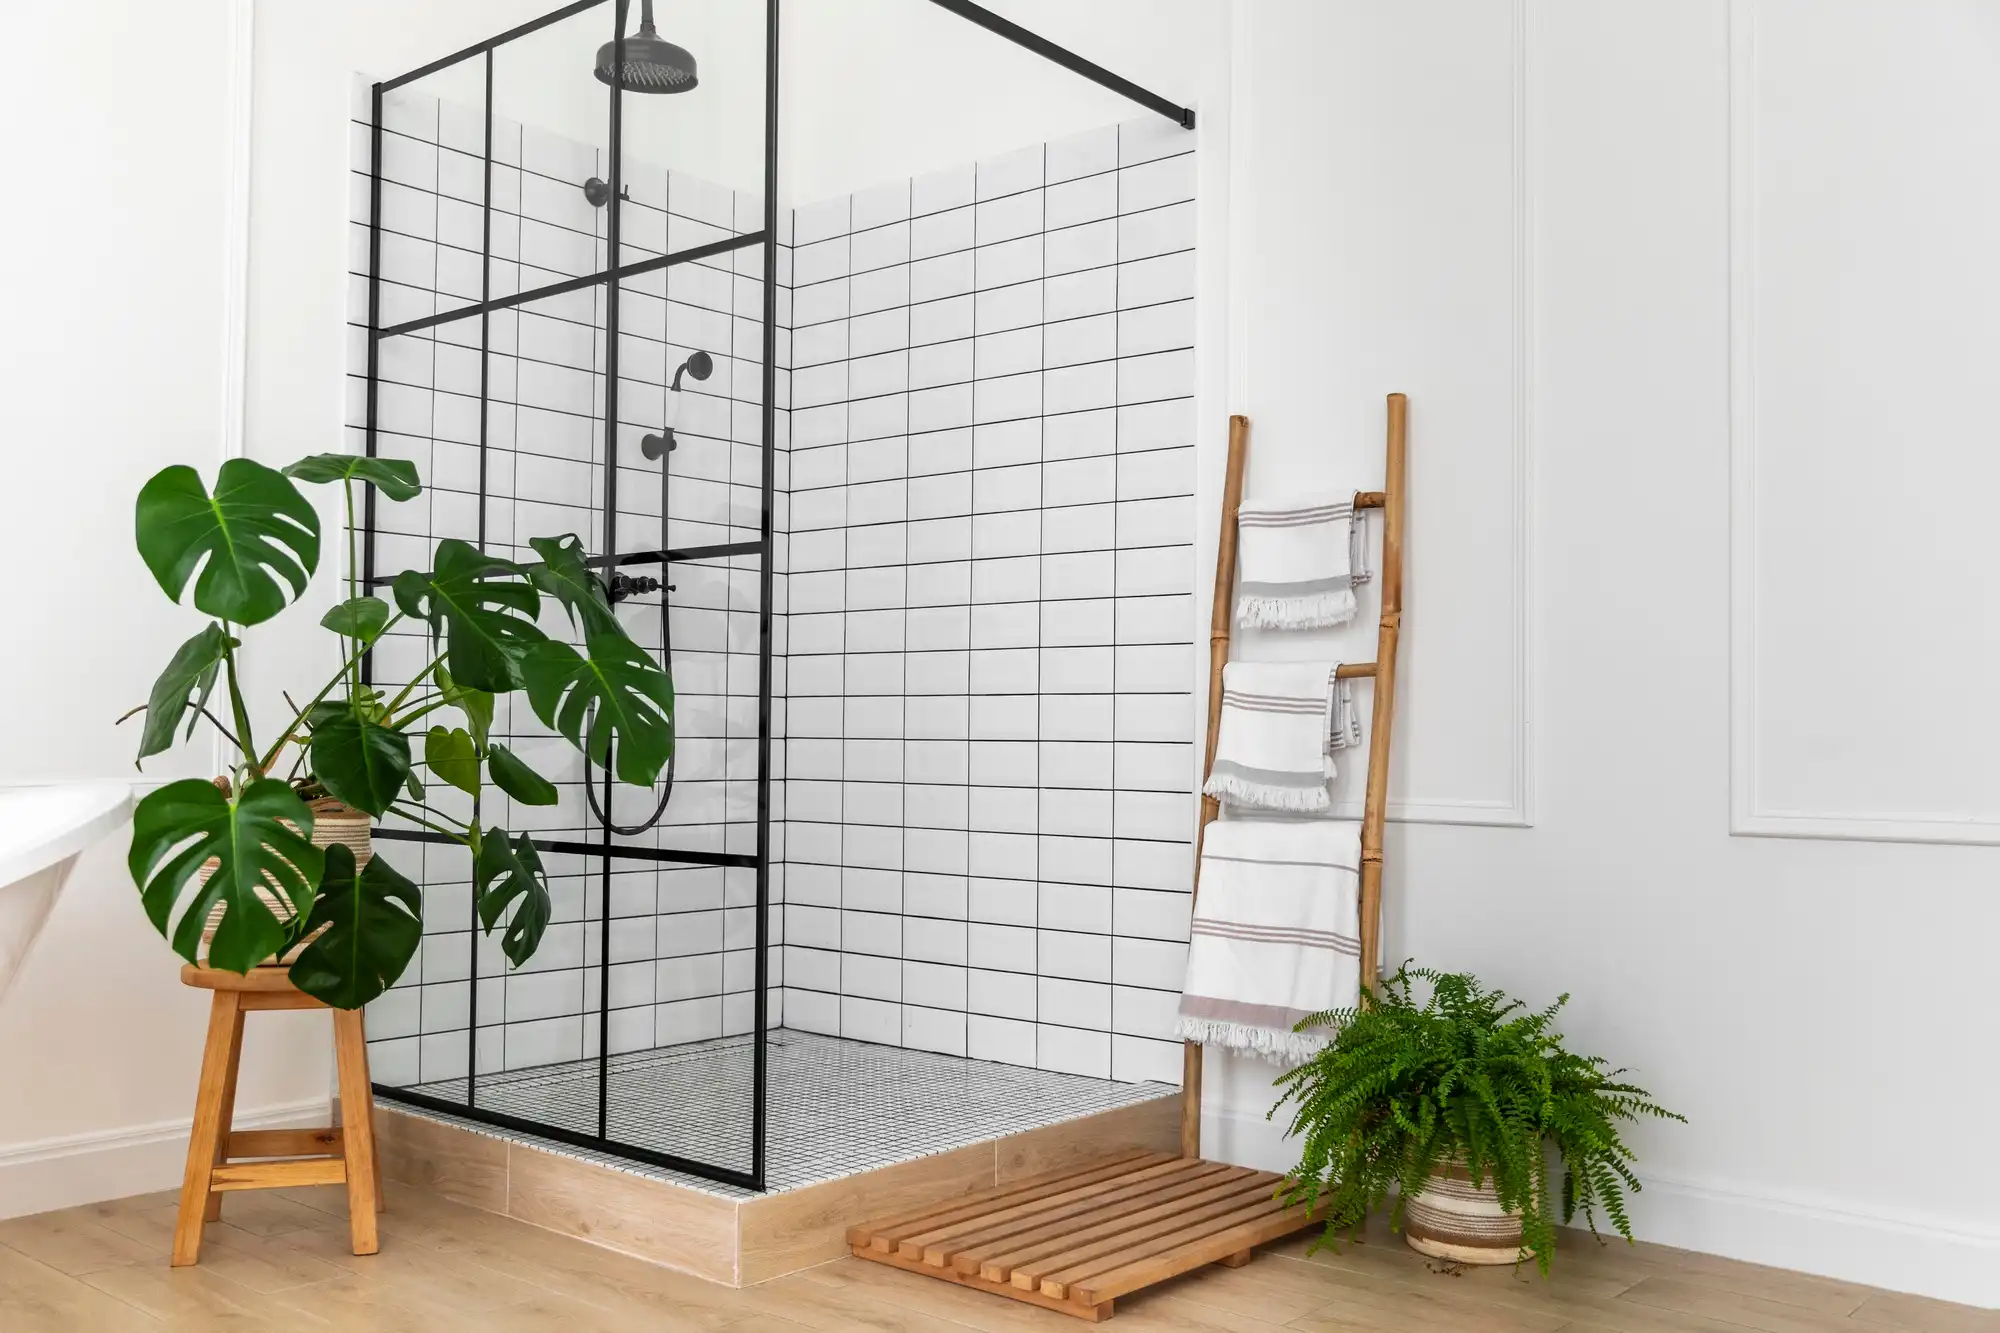 Salle de bain moderne avec carrelage géométrique, éclairage encastré et mobilier élégant